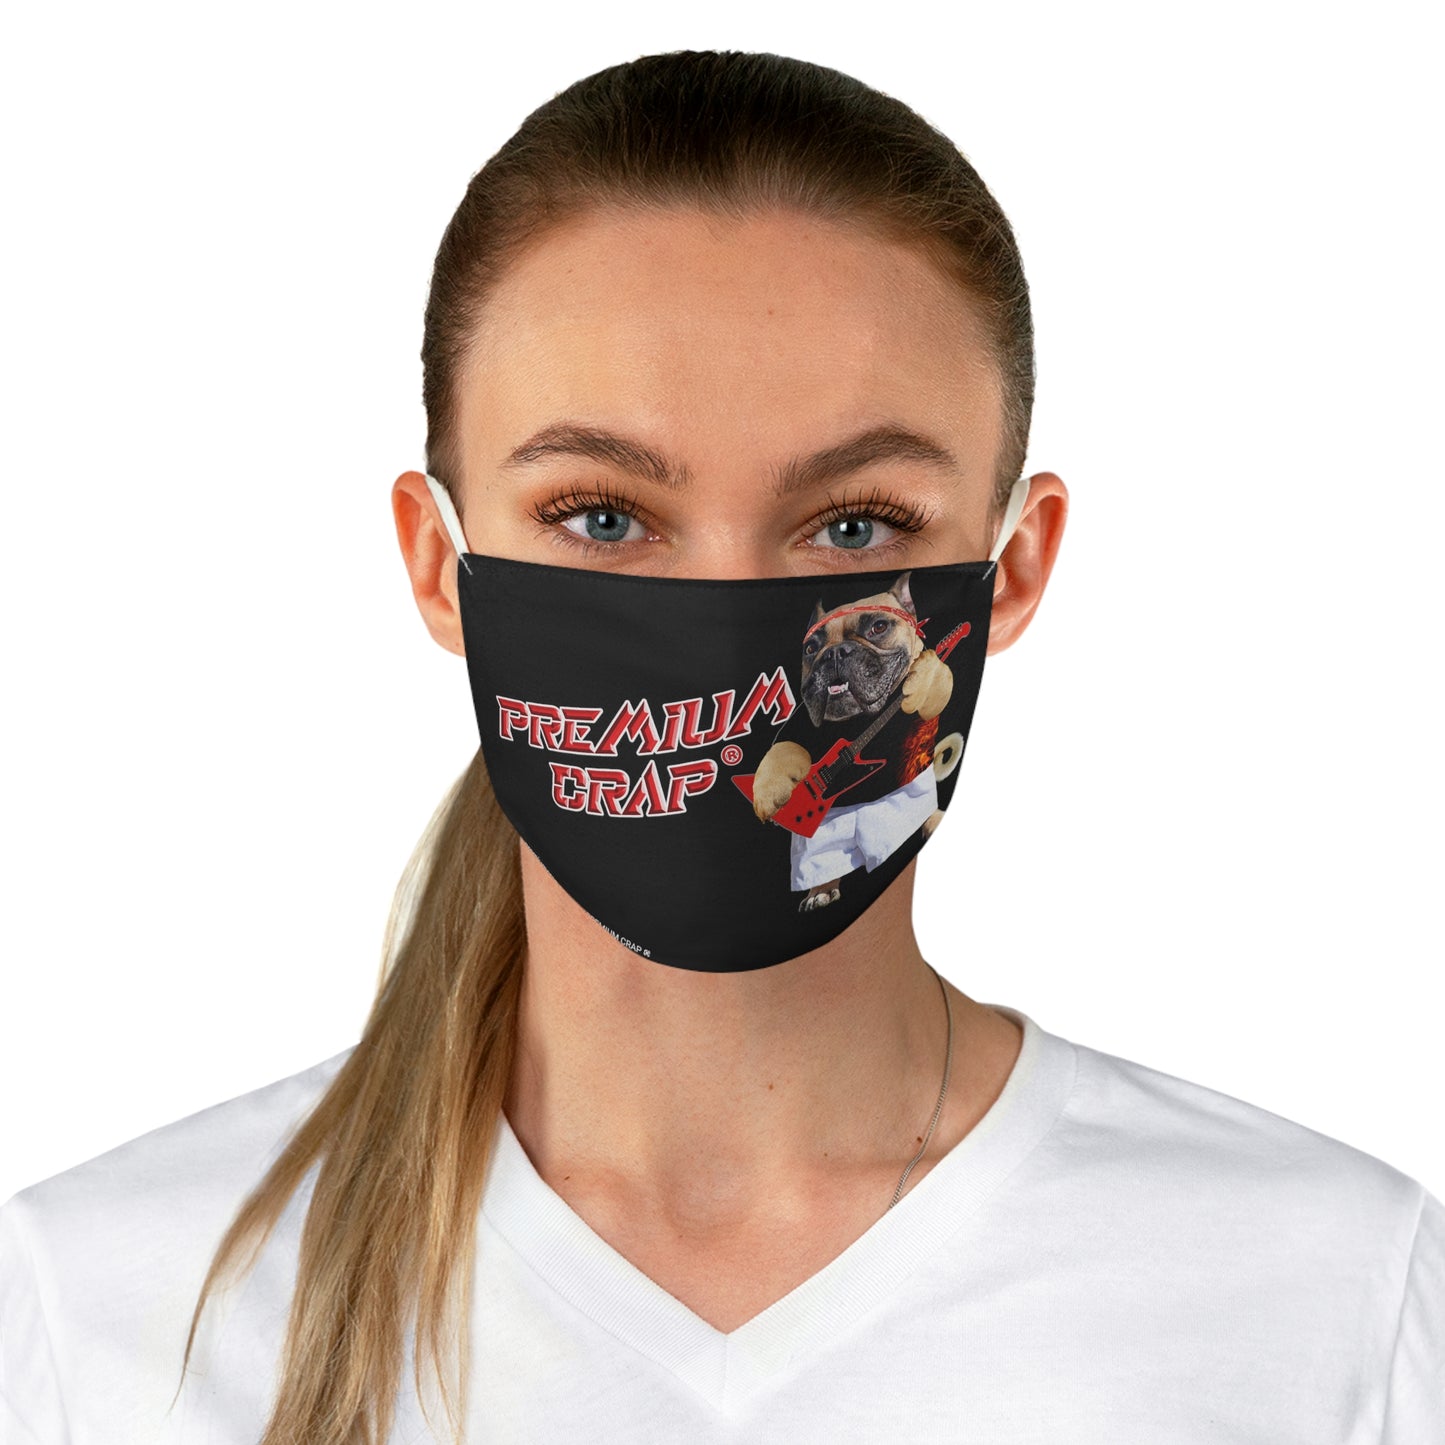 Premium Crap Fabric Face Mask